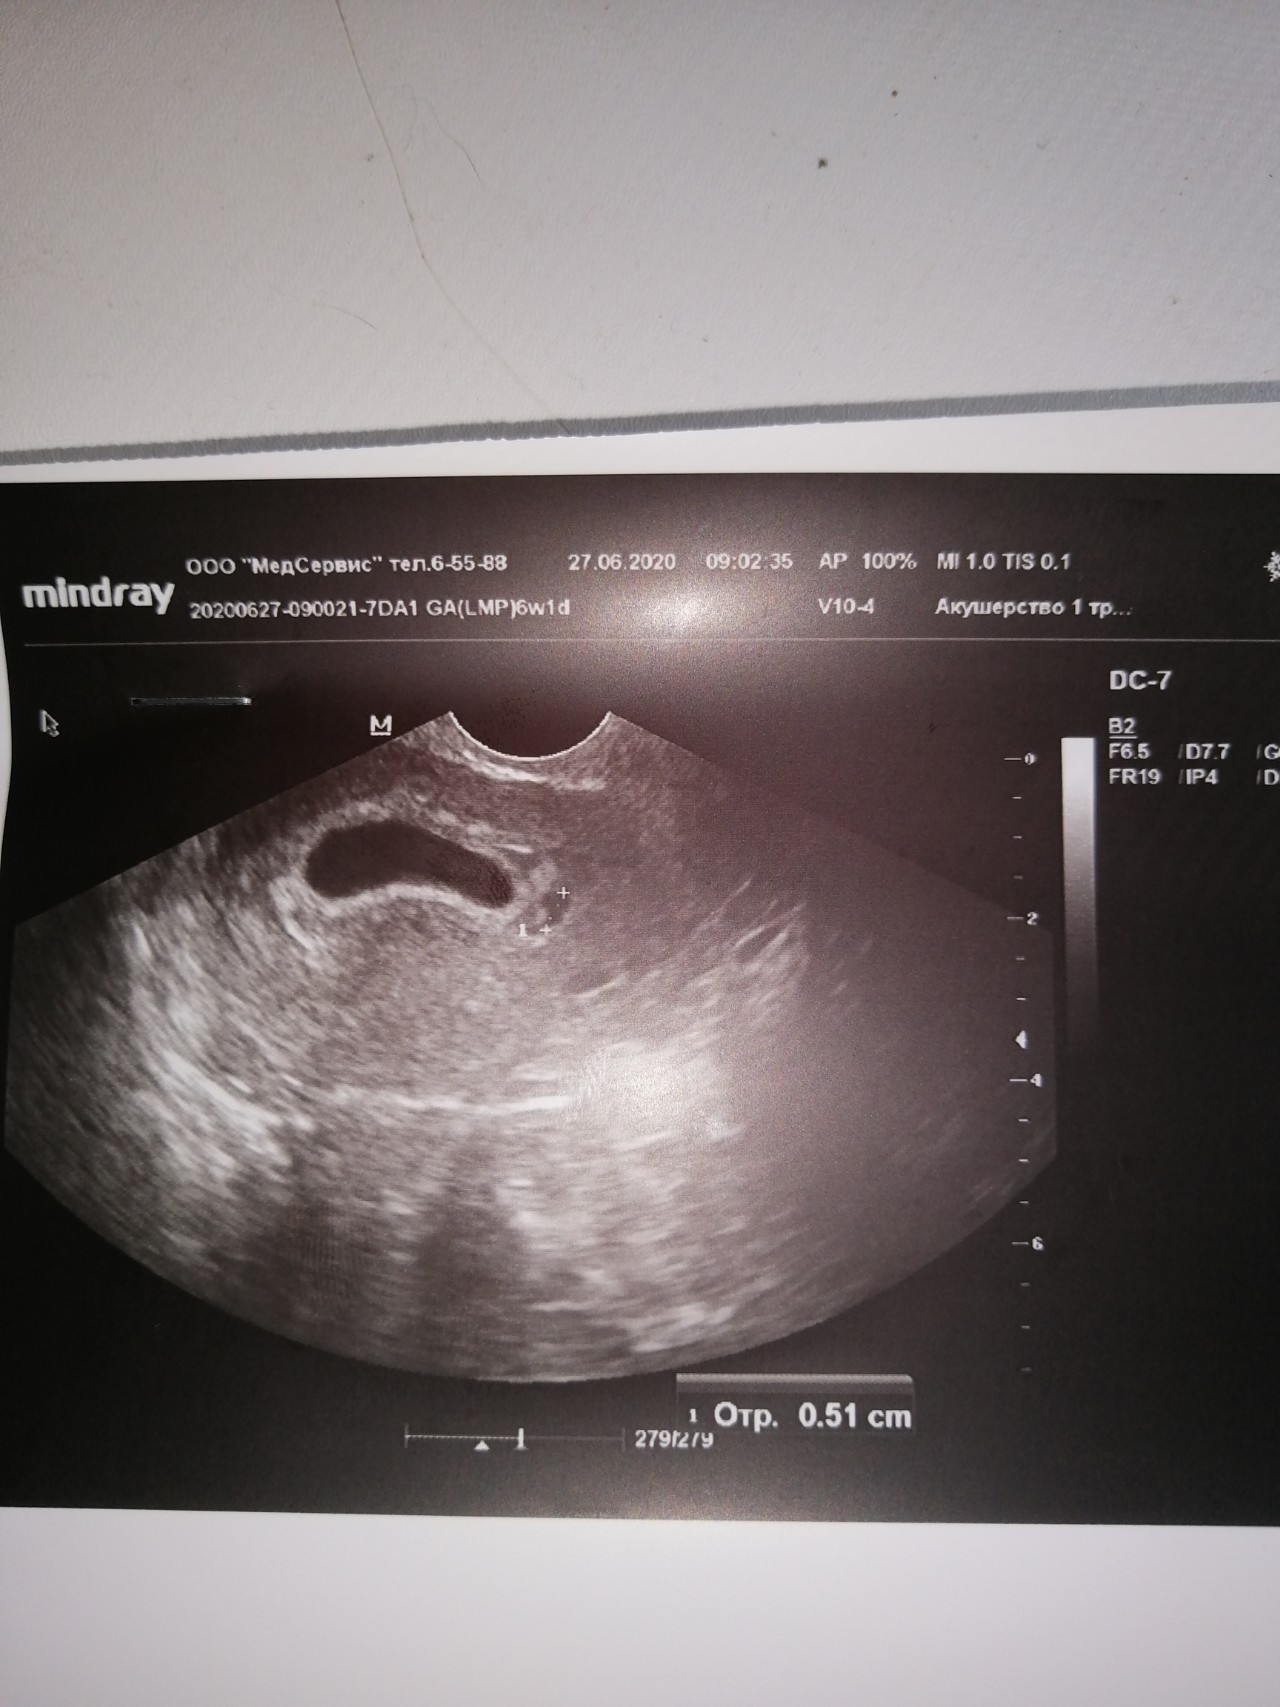 Как выглядит узи на 6 неделе. 6 Недель беременности ущиузи. УЗИ 6 недель беременности. Фото УЗИ на 6 неделе беременности акушерской. УЗИ на 5-6 неделе беременности акушерская.